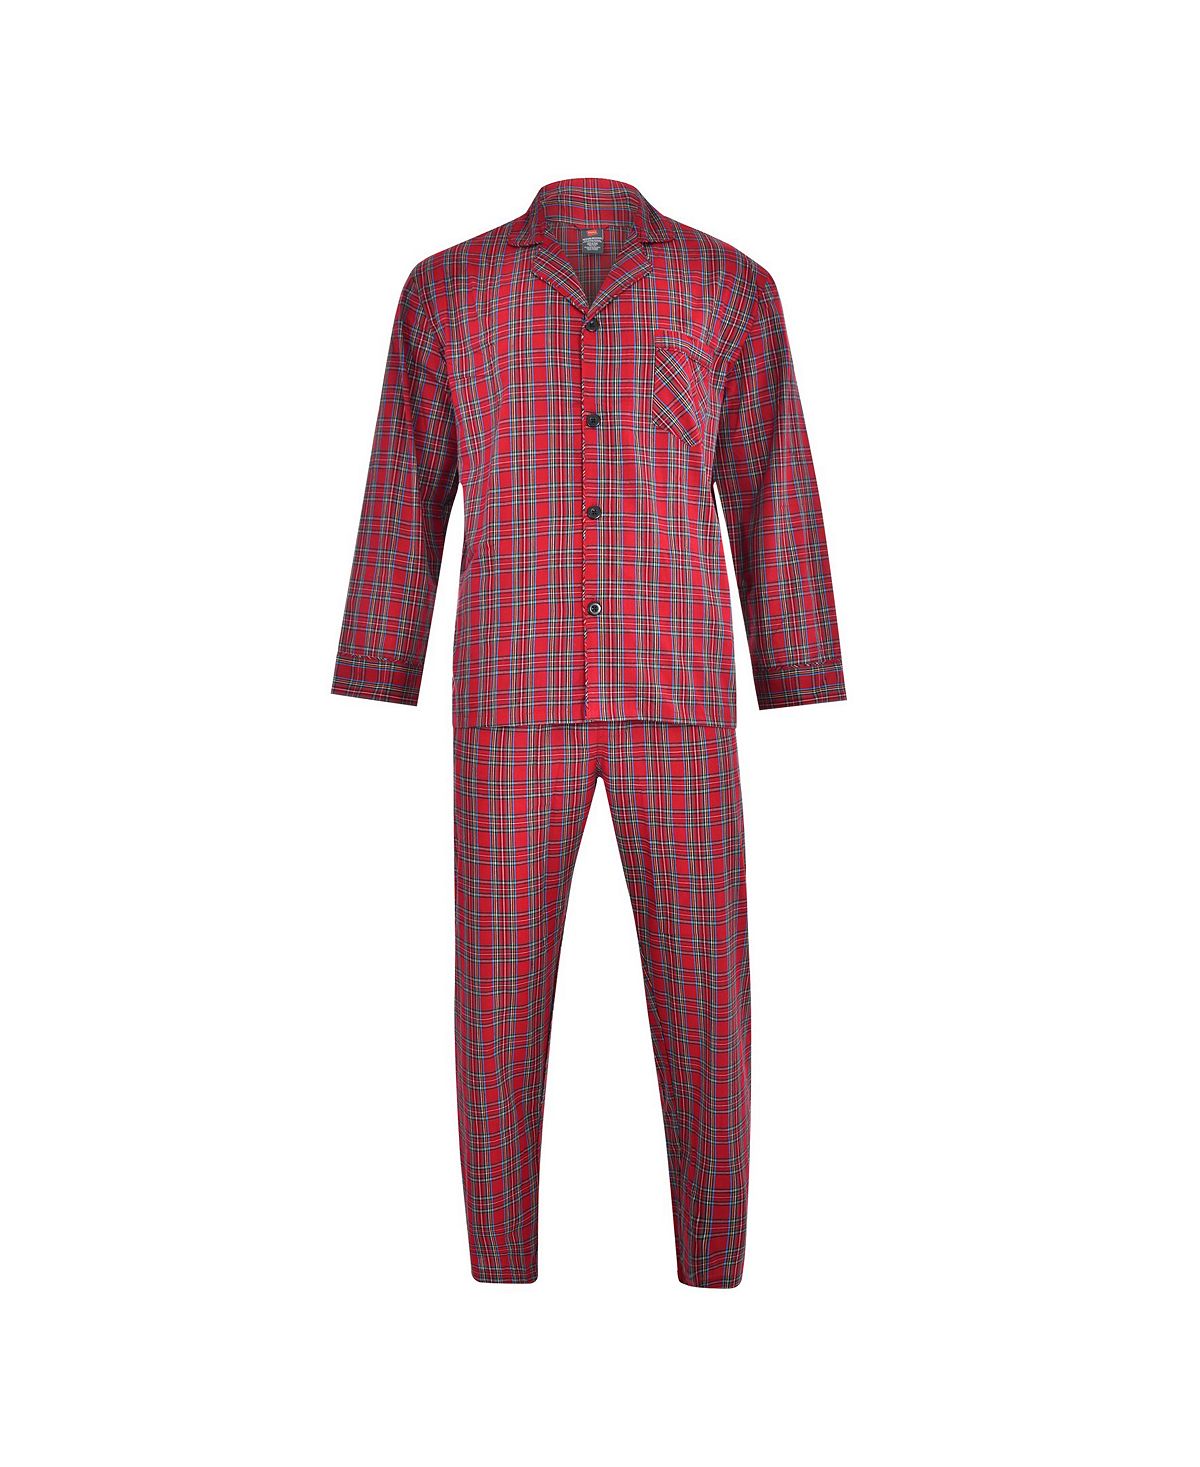 цена Мужской пижамный комплект из ткани Hanes большого и высокого размера из ткани ПВХ Hanes Platinum